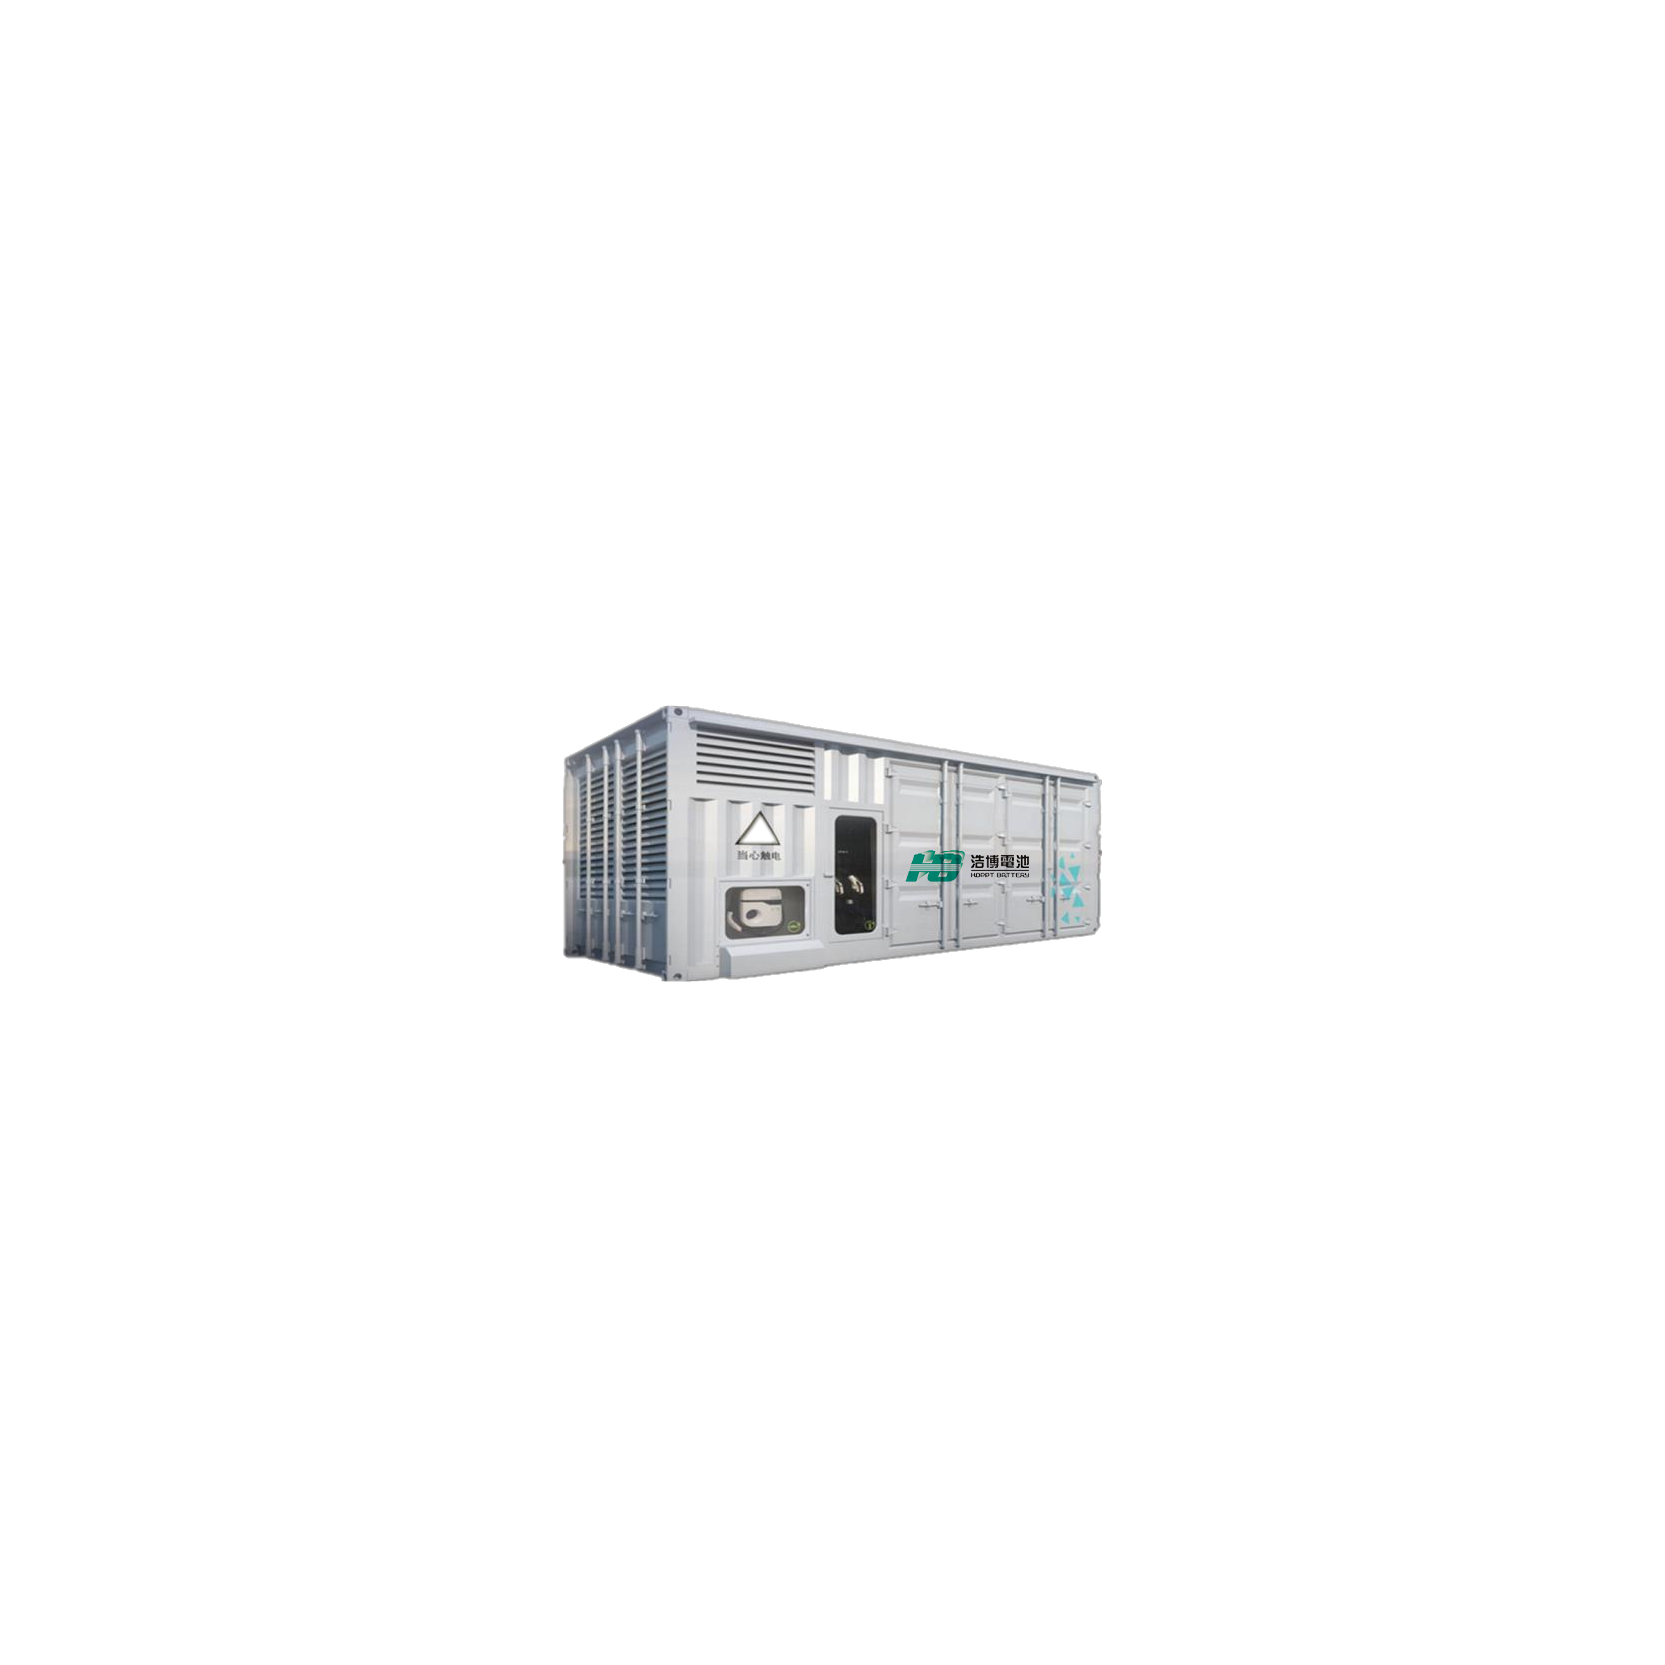 蓝狮PC-ESS2200储能系统2200kWh功率768V高电压微网电站户外电源